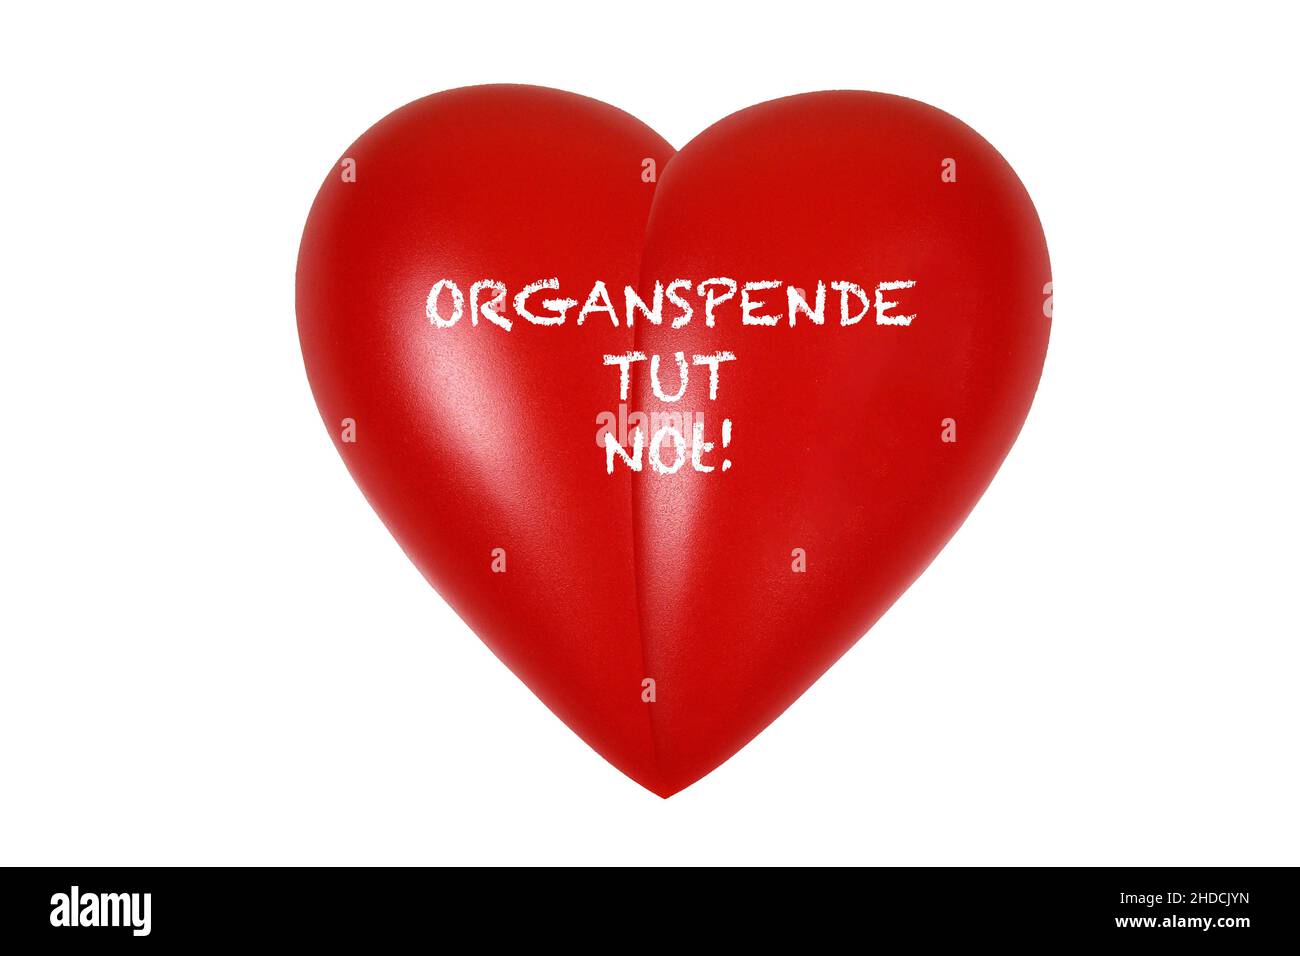 Rotes Herz, Organ, Gesundheit, Körperteil, Stock Photo